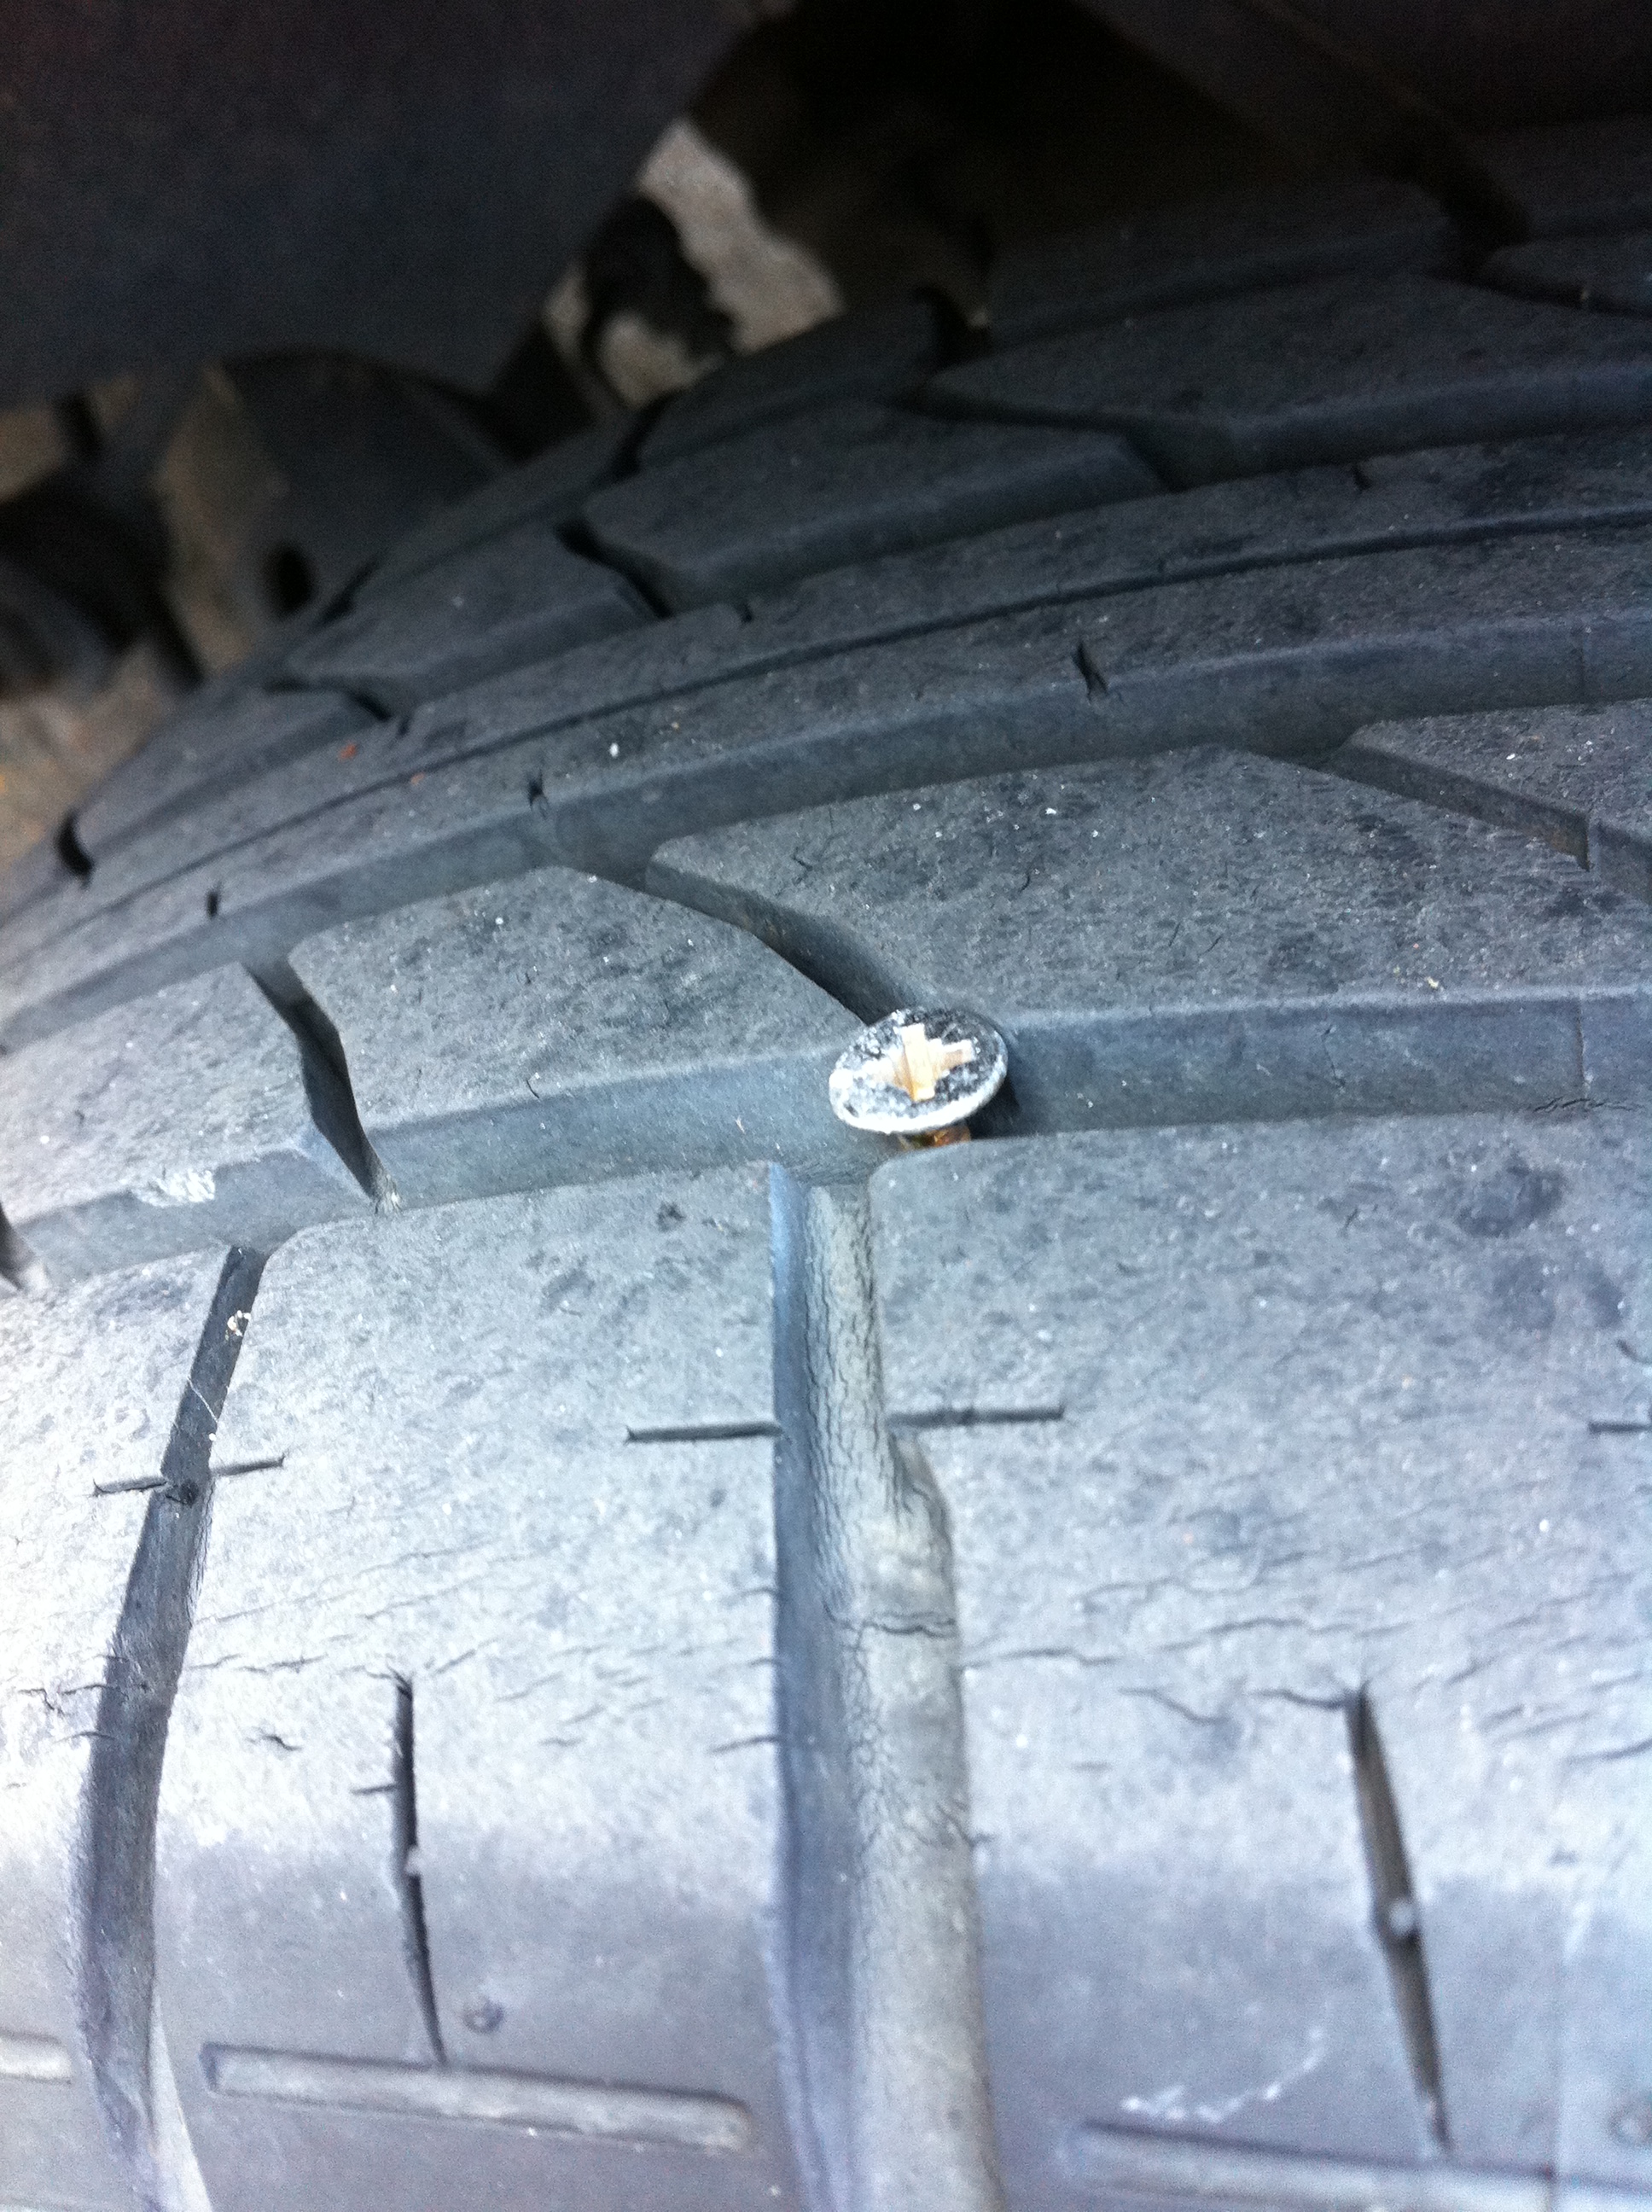 Réparation pneu crevé : prix, devis, rdv